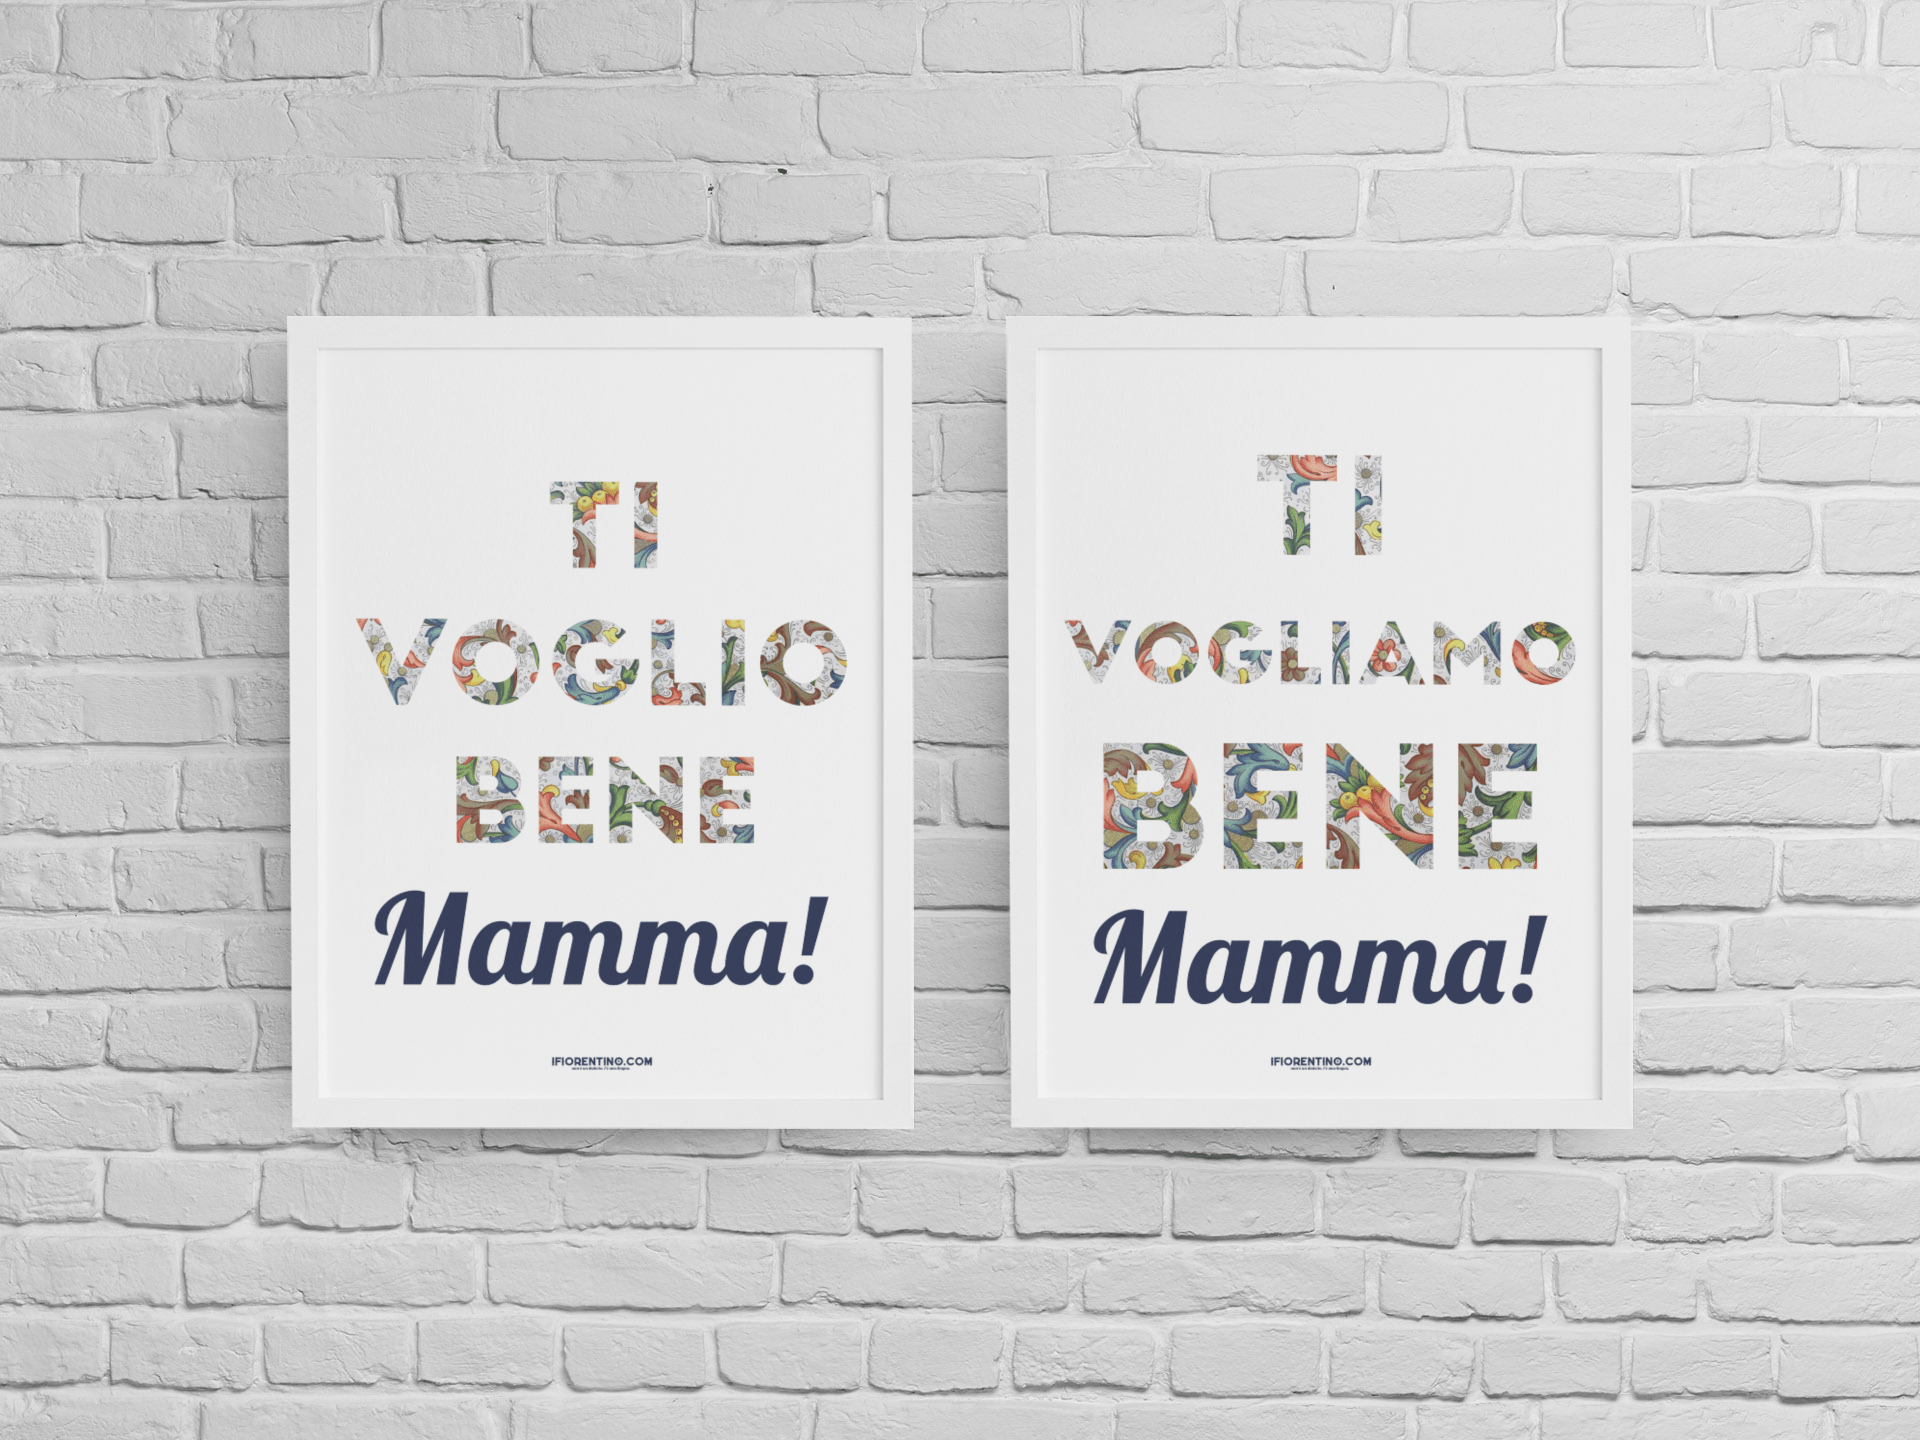 TI VOGLIO / VOGLIAMO BENE MAMMA! con CARTA FIORENTINA - poster fiorentini - poster firenze - regalo fiorentino - fiorentino  - foppeddittelo